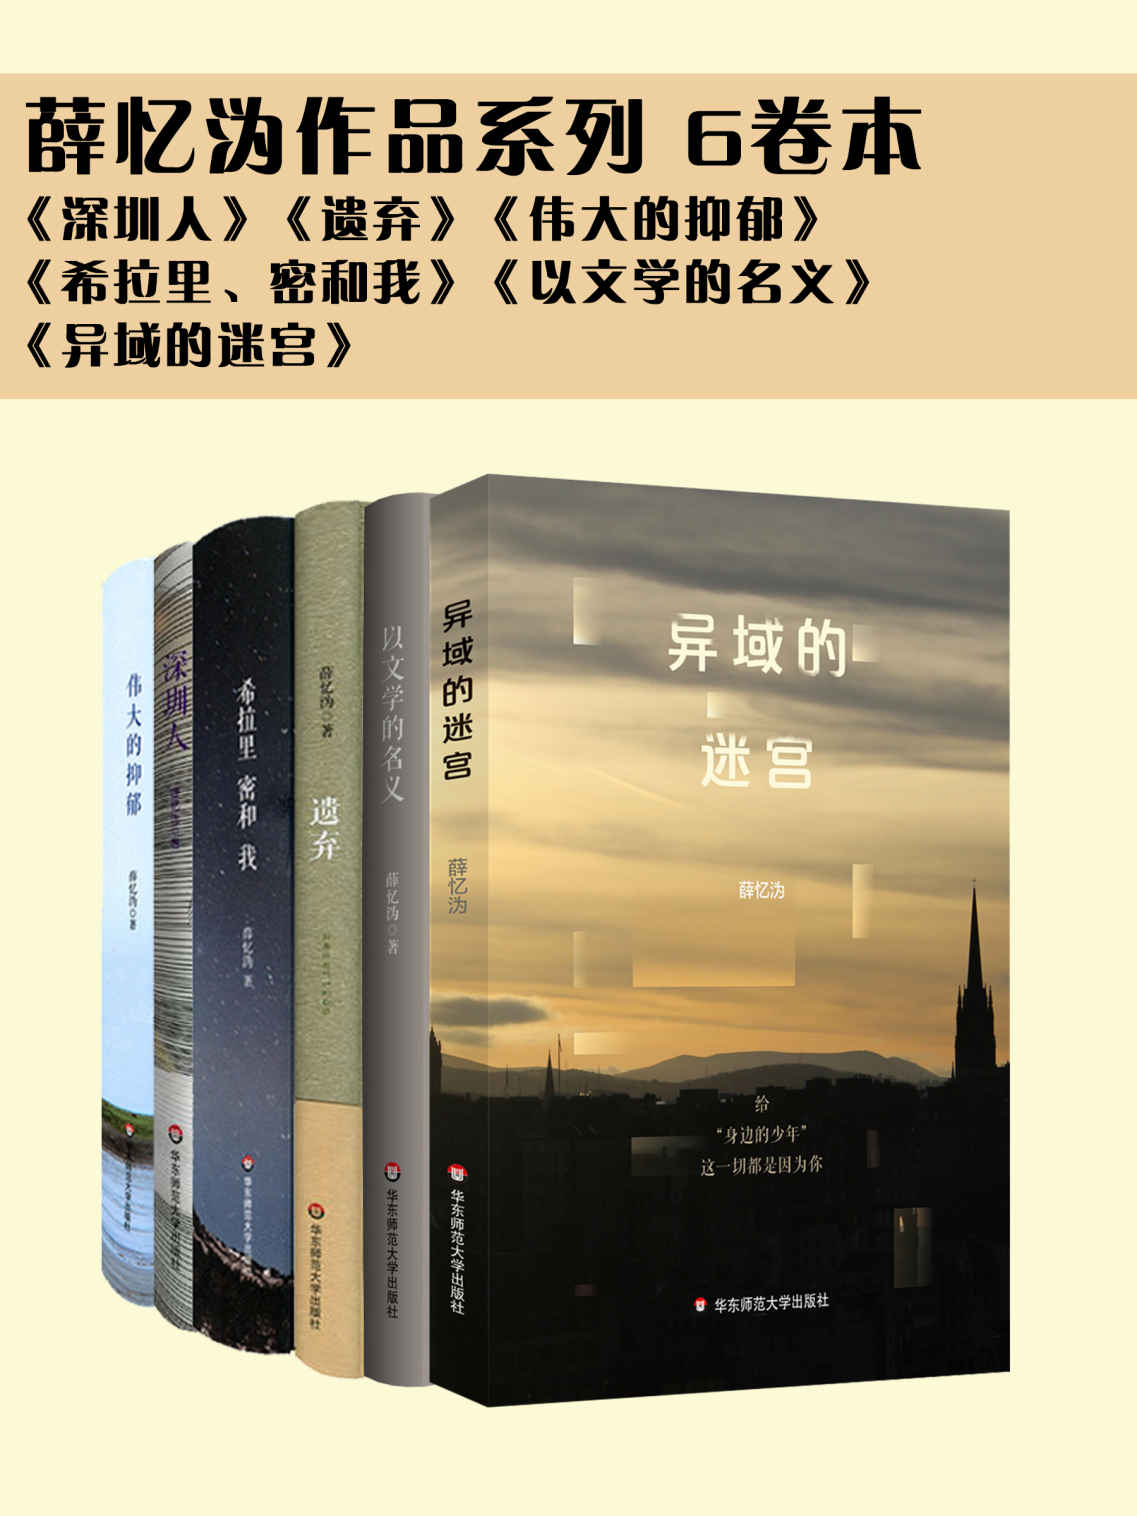 薛忆沩作品系列 6卷本（《深圳人》《遗弃》《伟大的抑郁》《希拉里、密和我》《以文学的名义》《异域的迷宫》